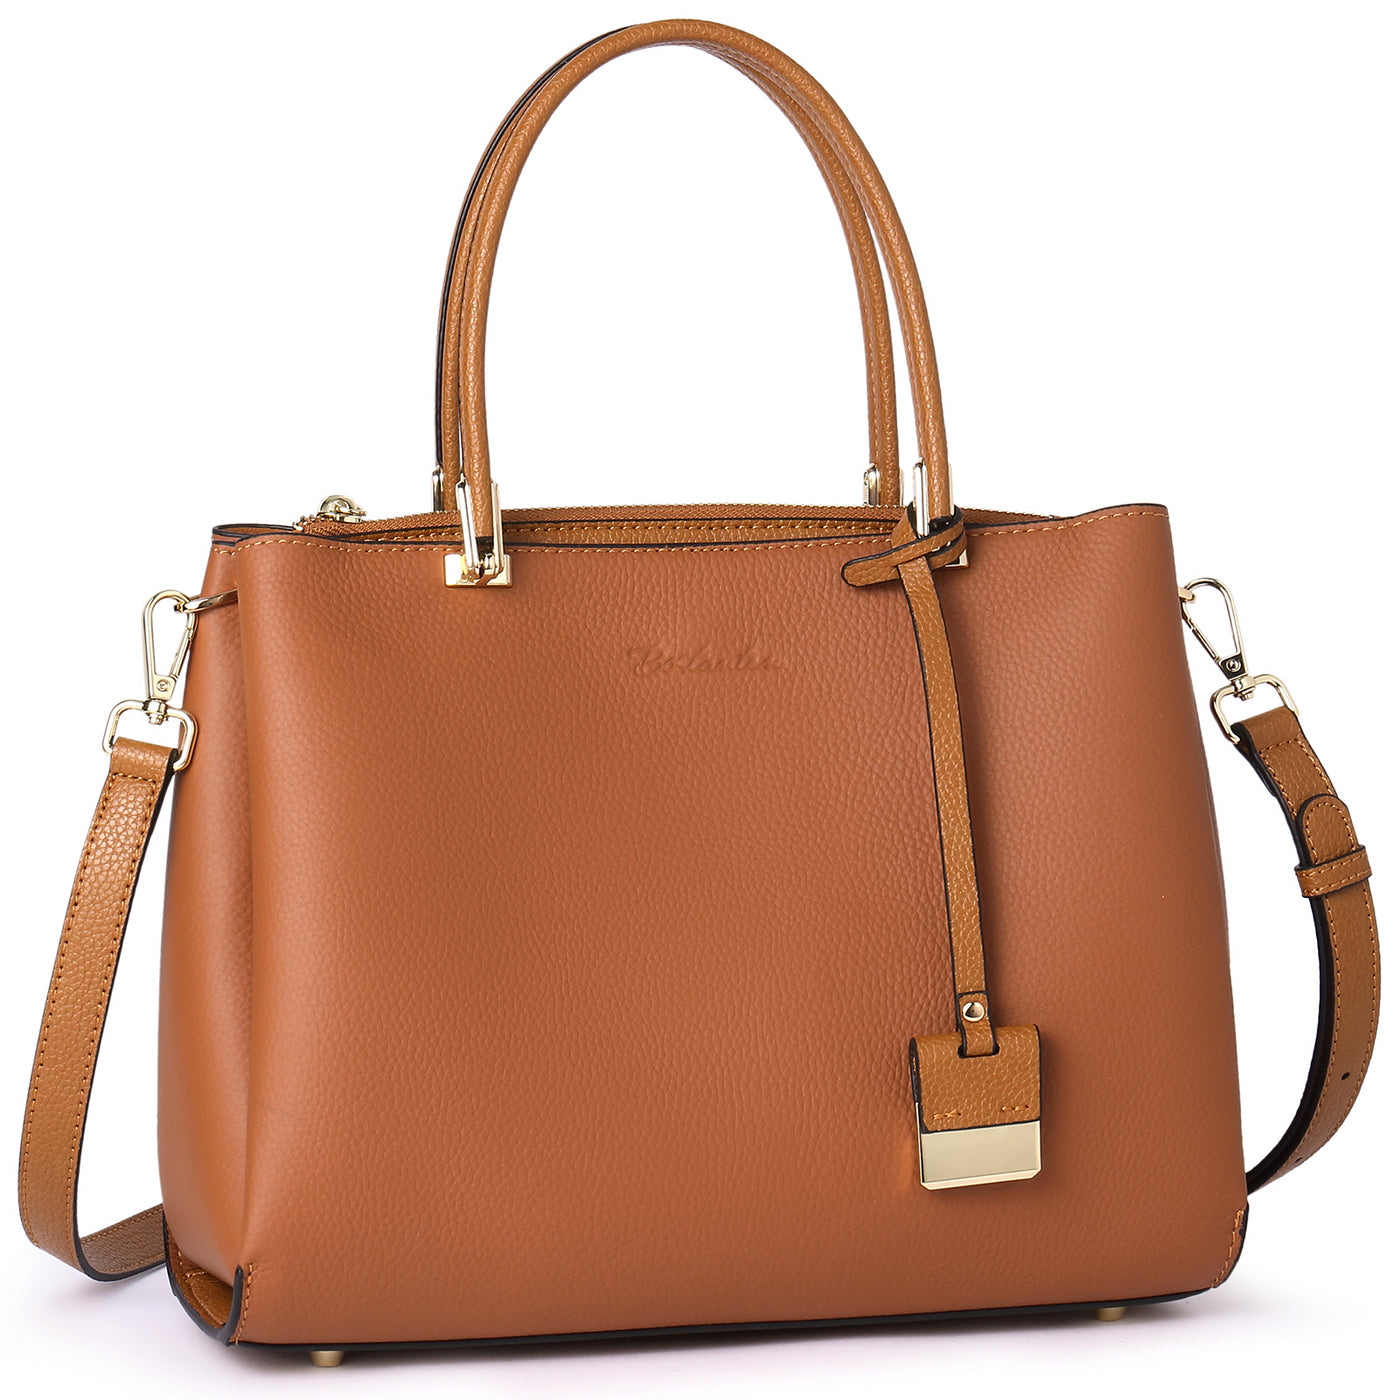 Leather Handle Shoulder Strap for Handbag Purse, Designer Bag